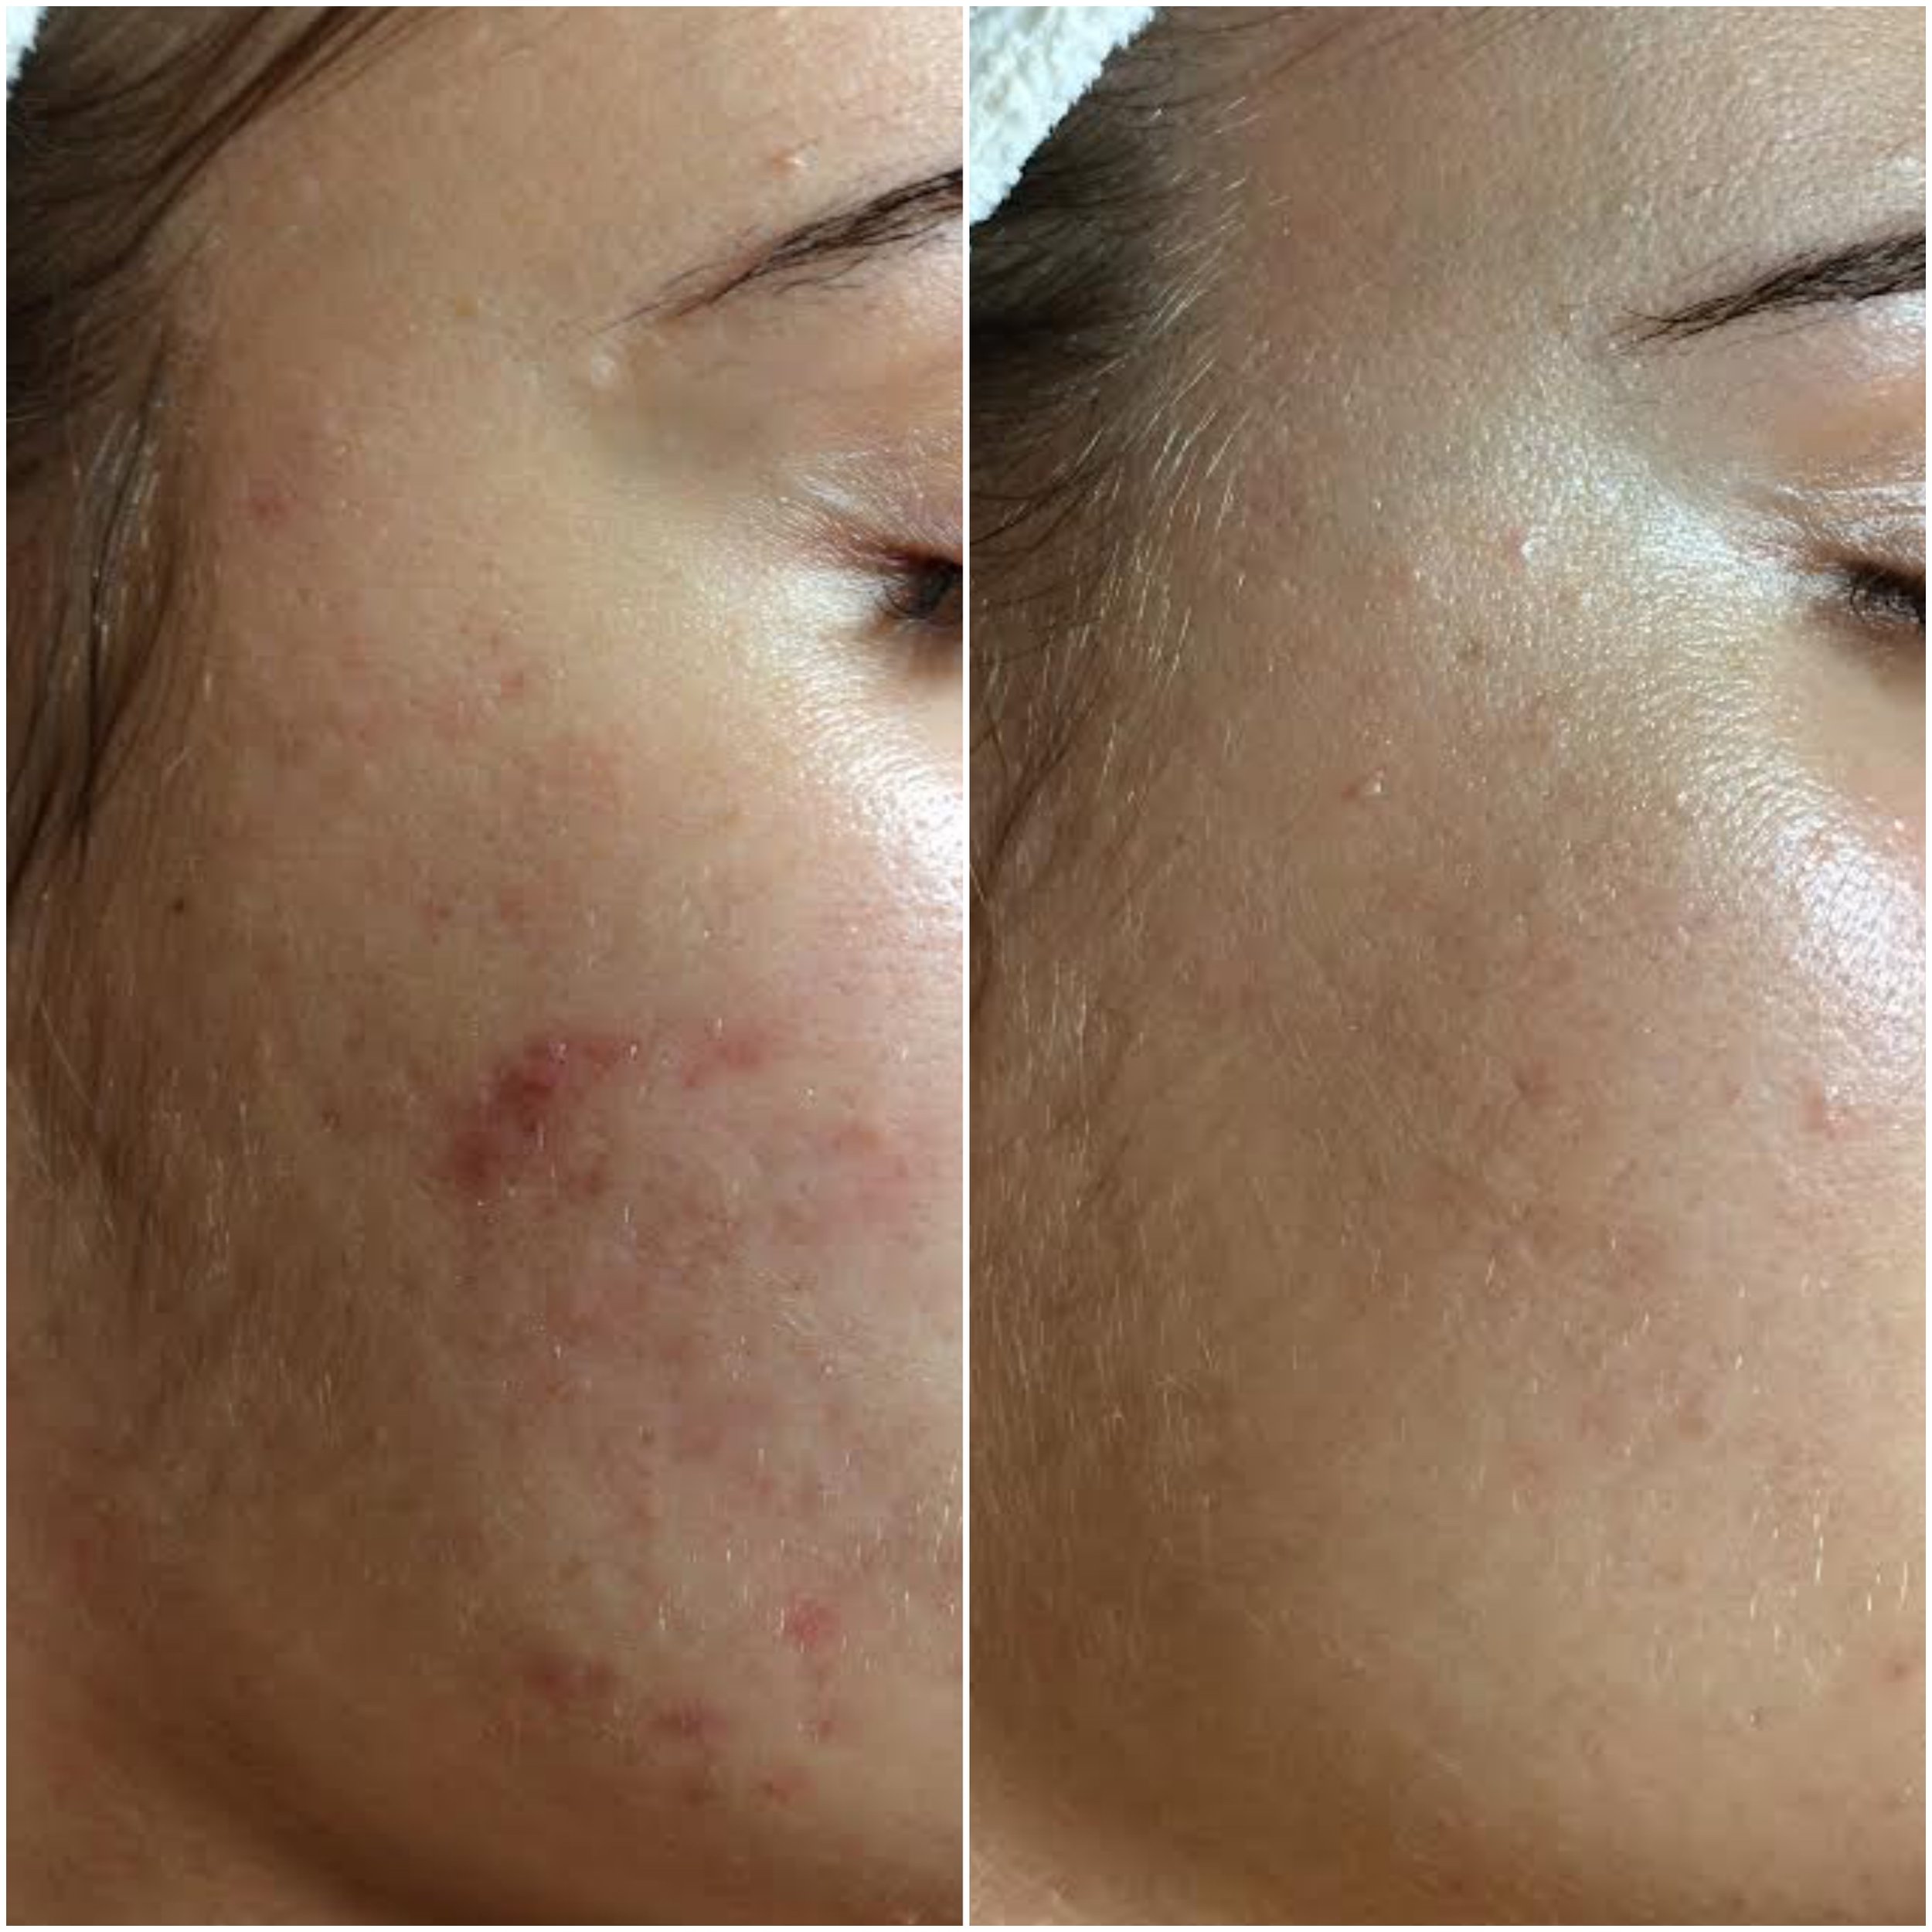   Cystic acne cleared using NŪR hi-tech facial series  